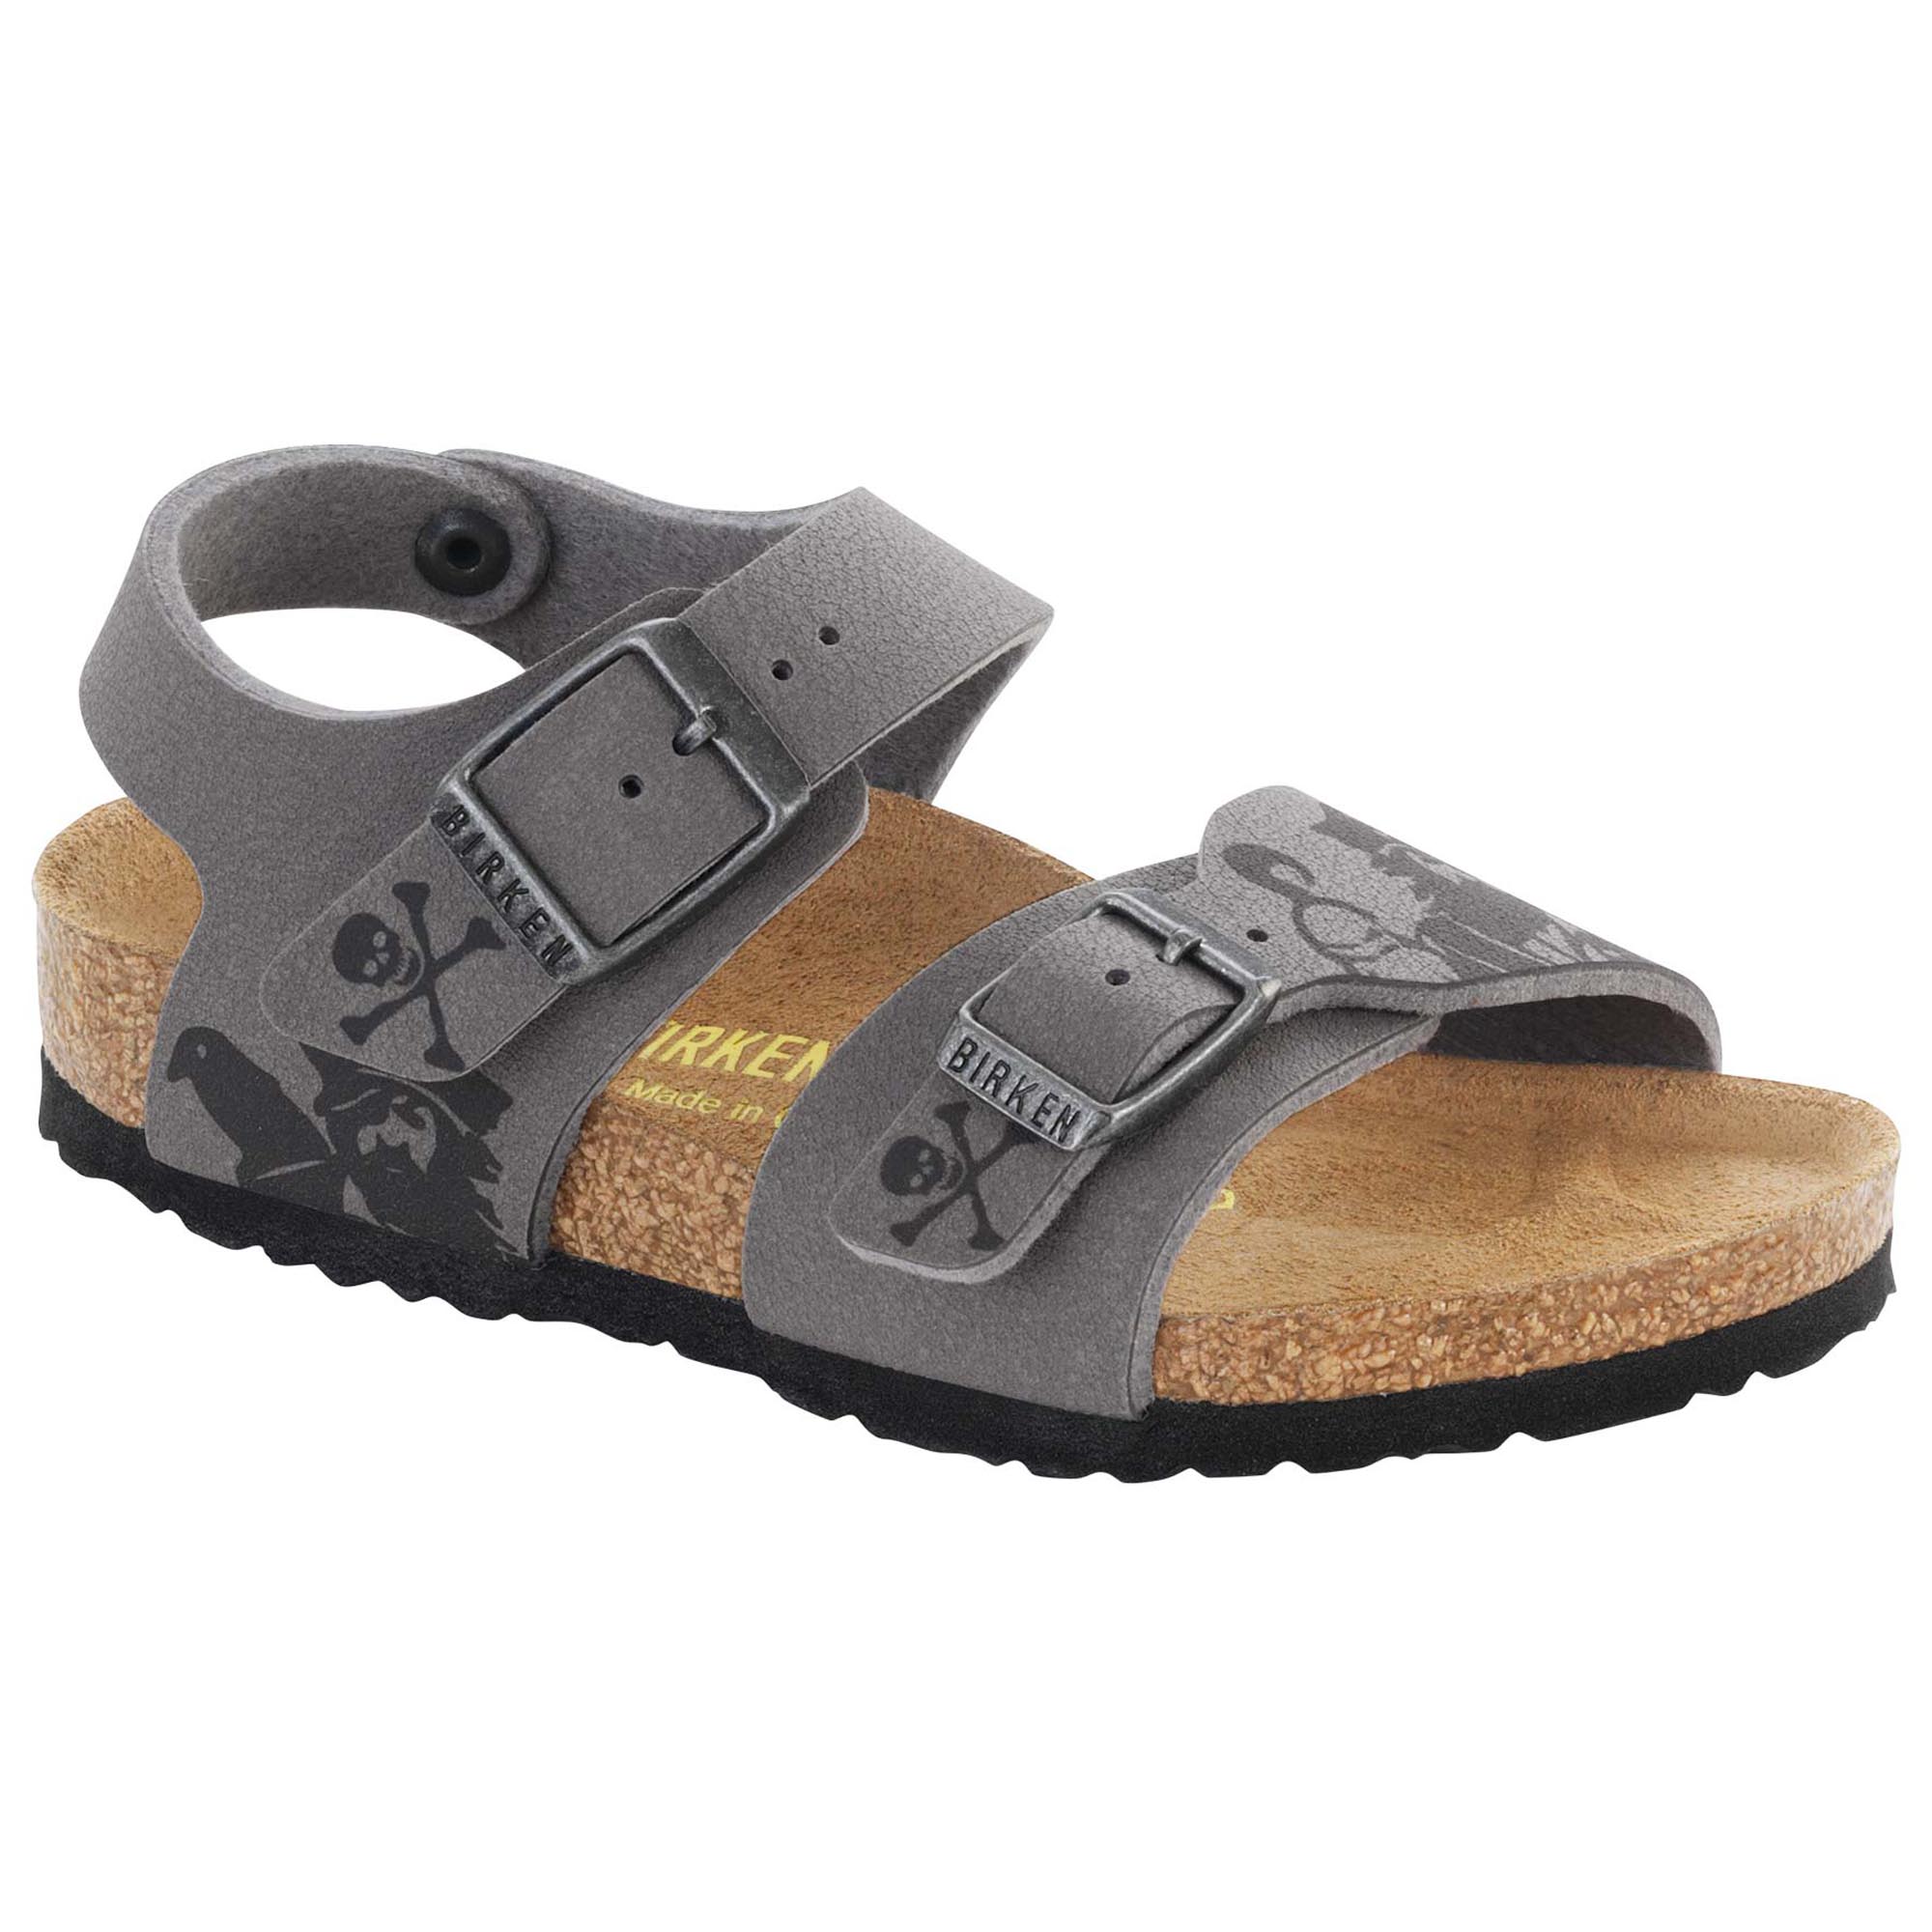 birkenstock children's sandals